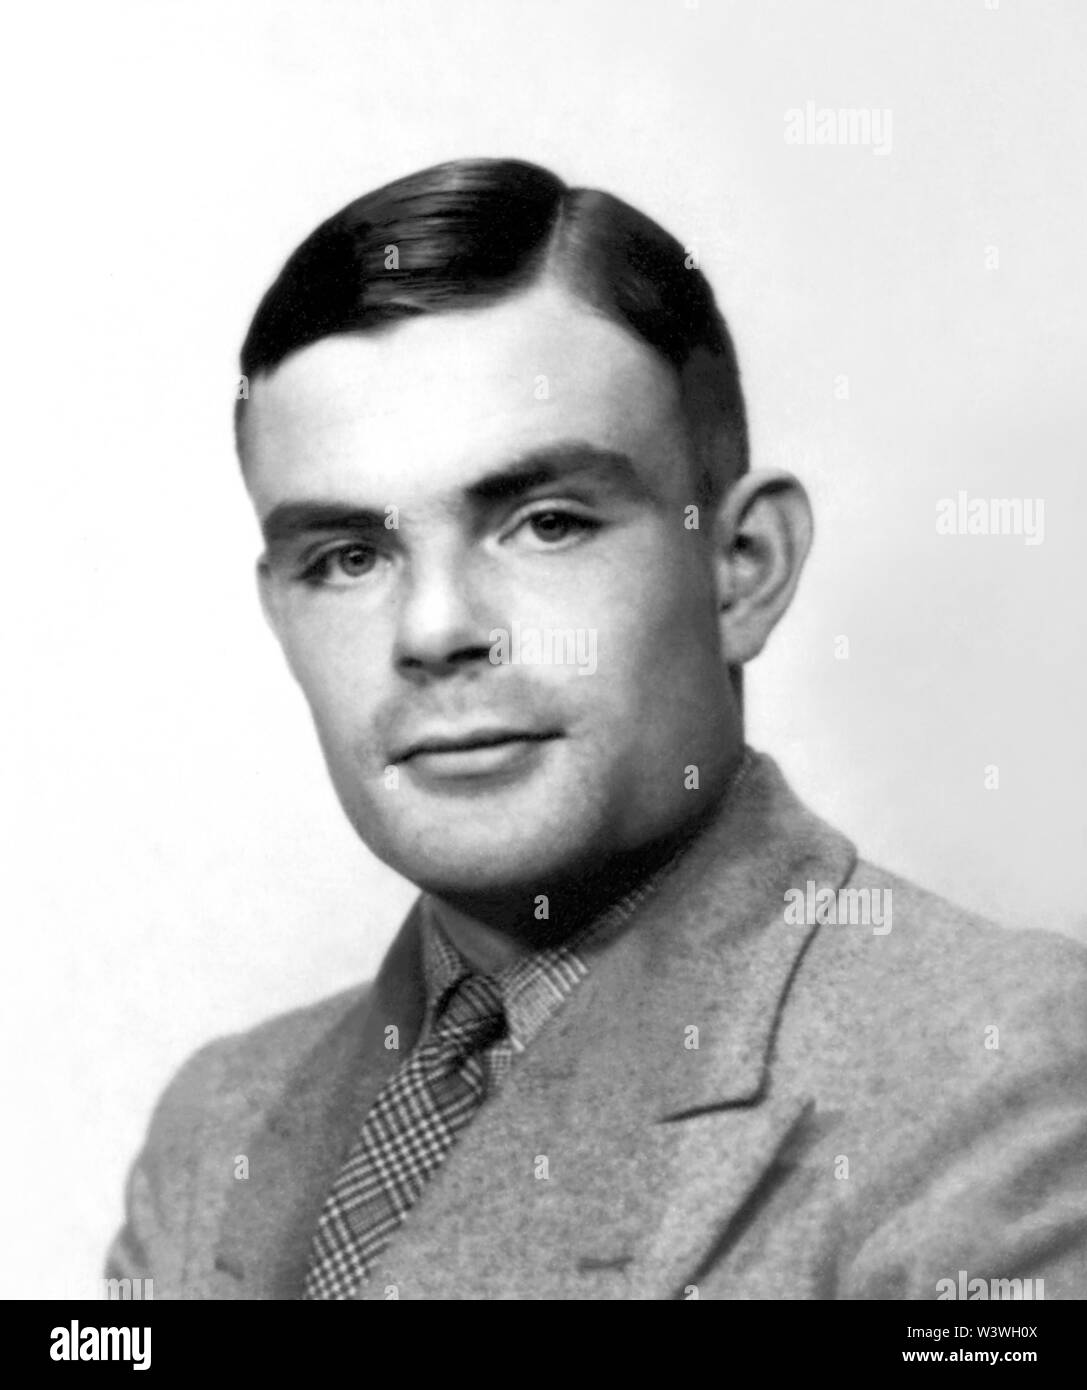 Alan Mathison Turing (1912-1954), un matemático británico, es ampliamente considerado como el padre de la informática teórica y la inteligencia artificial. Durante la II Guerra Mundial trabajó para el Gobierno de código y Cypher School en Bletchley Park, Gran Bretaña centro codebreaking que produjo Ultra inteligencia. Por un tiempo Turing llevó Hut 8, la sección encargada de criptoanálisis naval alemán. Turing jugó un papel crucial en el agrietamiento interceptó mensajes codificados que ayudó a los aliados para derrotar a los nazis. (Foto circa 1930) Foto de stock